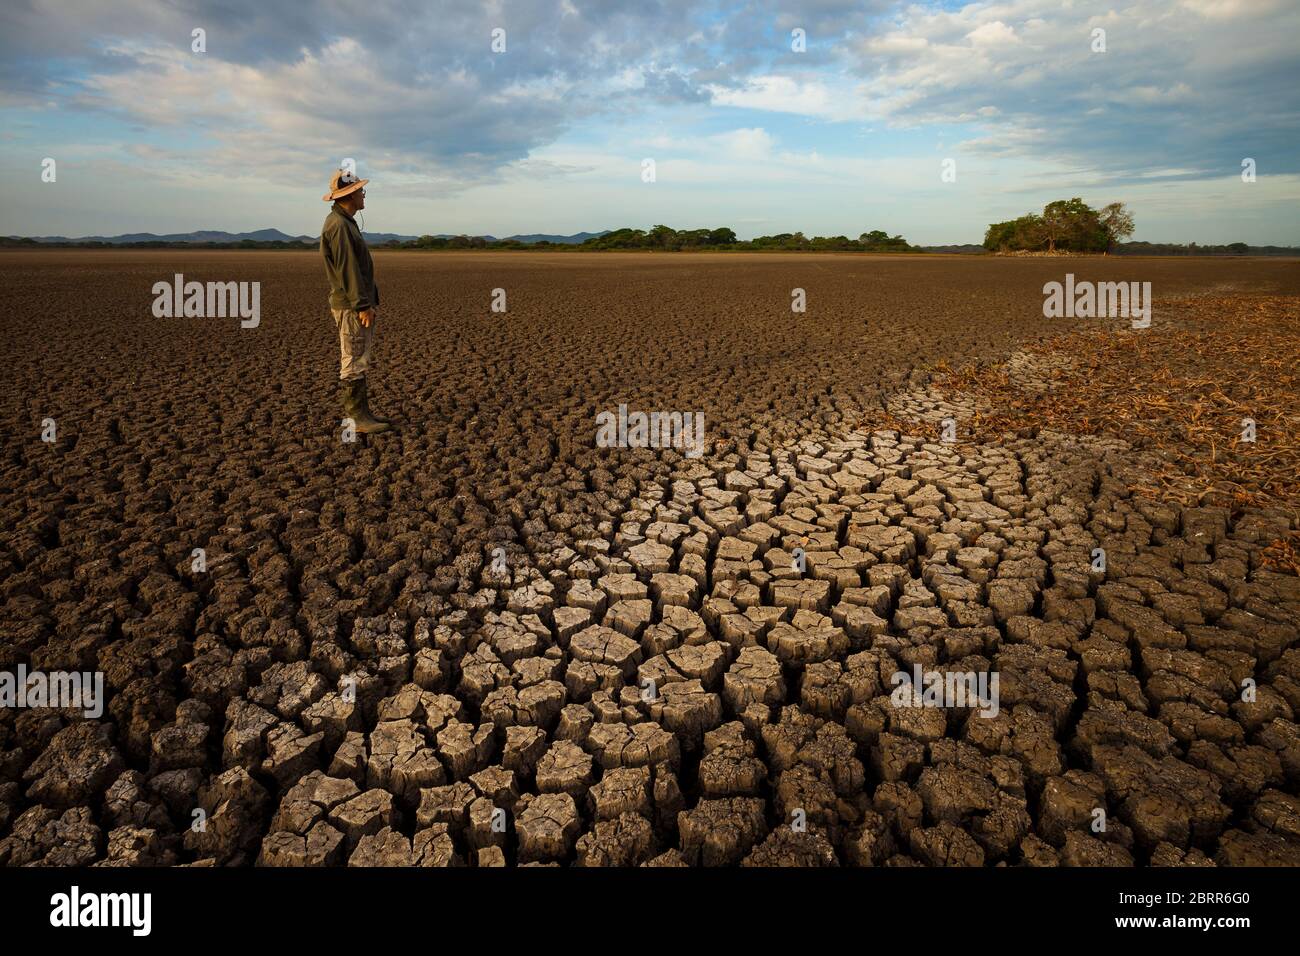 Drought in the lake of Cienaga de las Macanas, El Rincon, Herrera province, Republic of Panama. Stock Photo